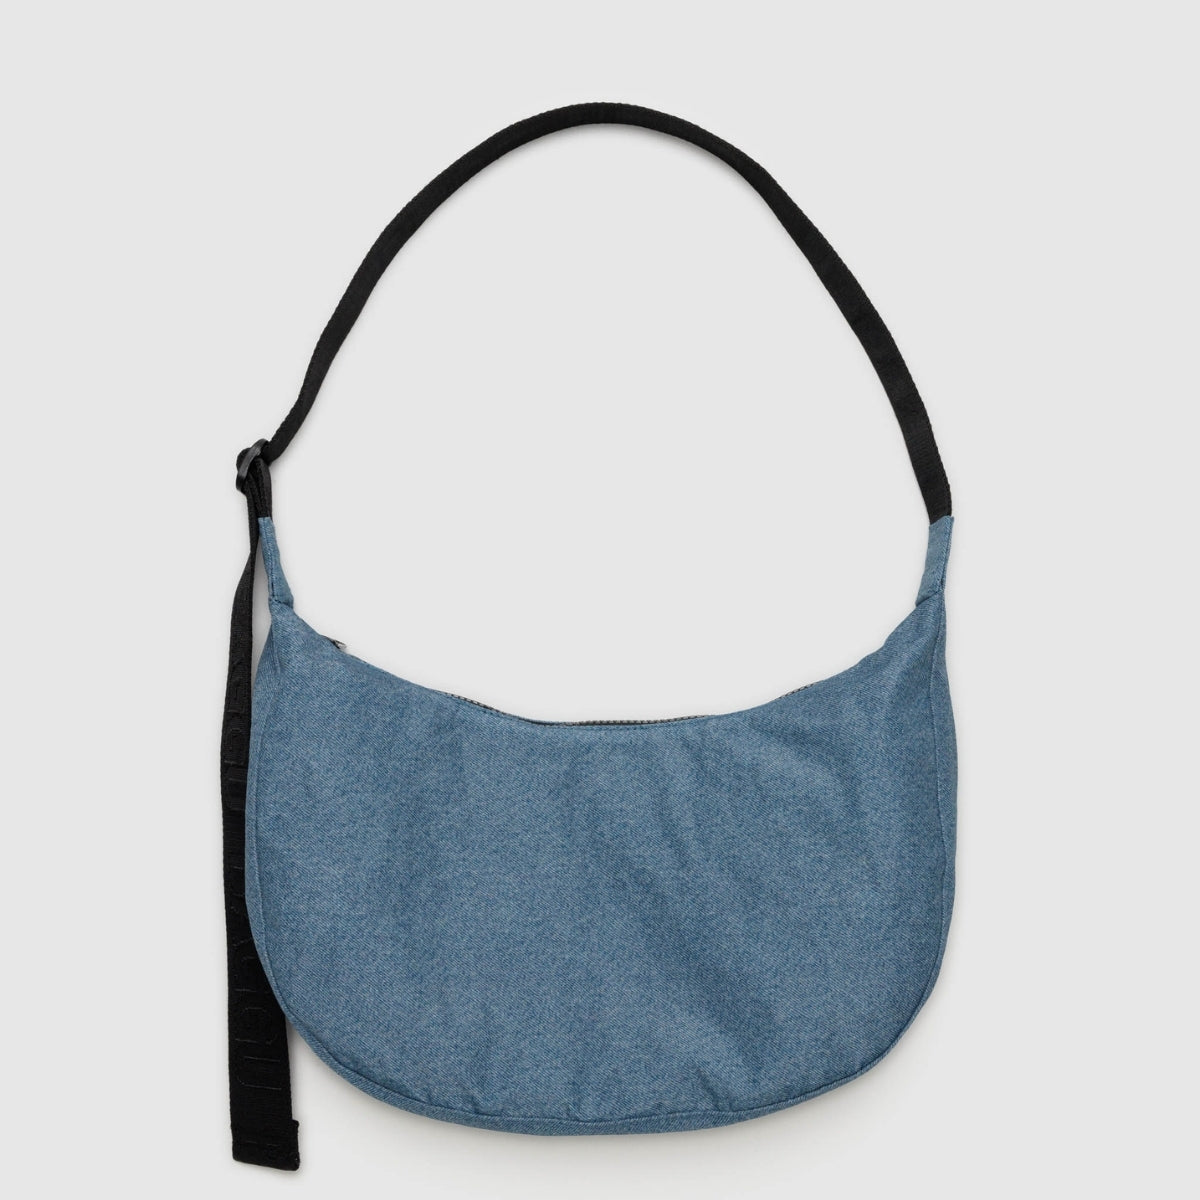 Baggu Medium Nylon Crescent Bag in Digital Denim